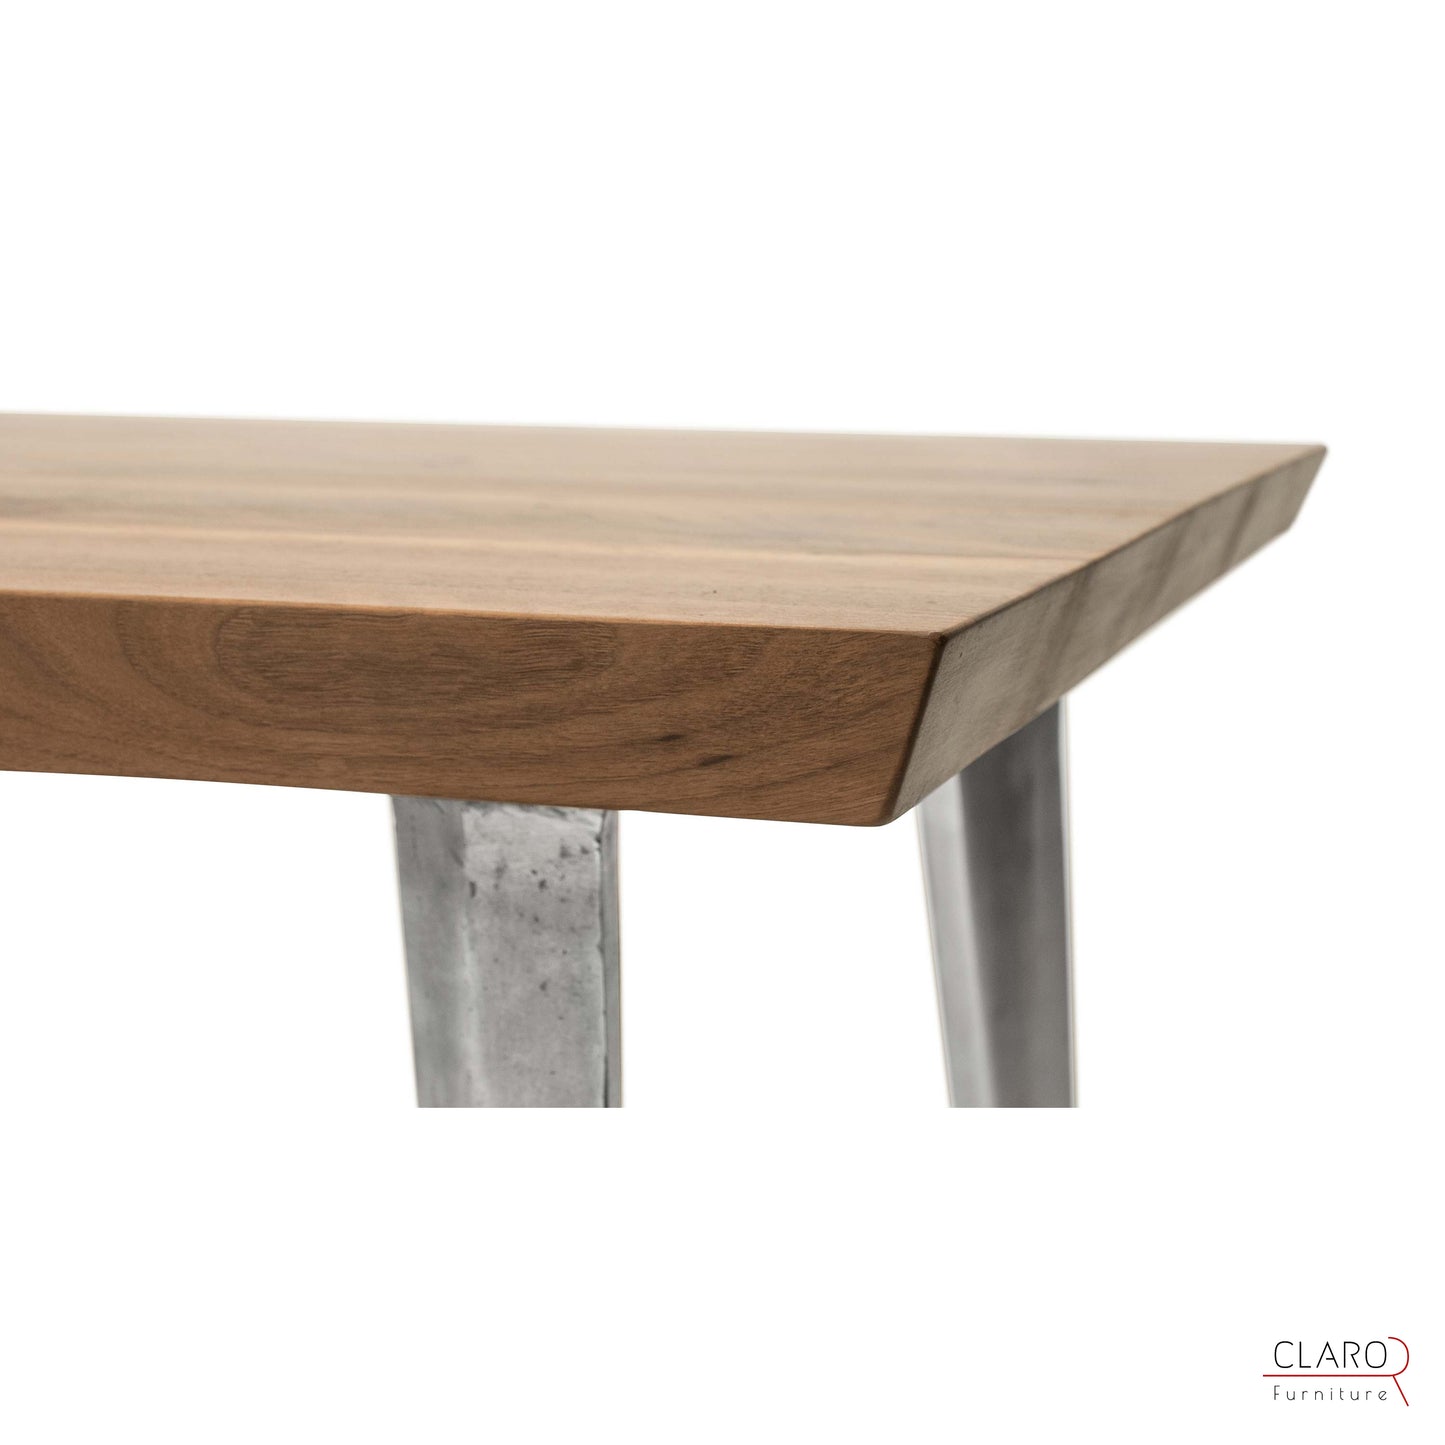 Walnut Table with Sand Cast Aluminium Legs